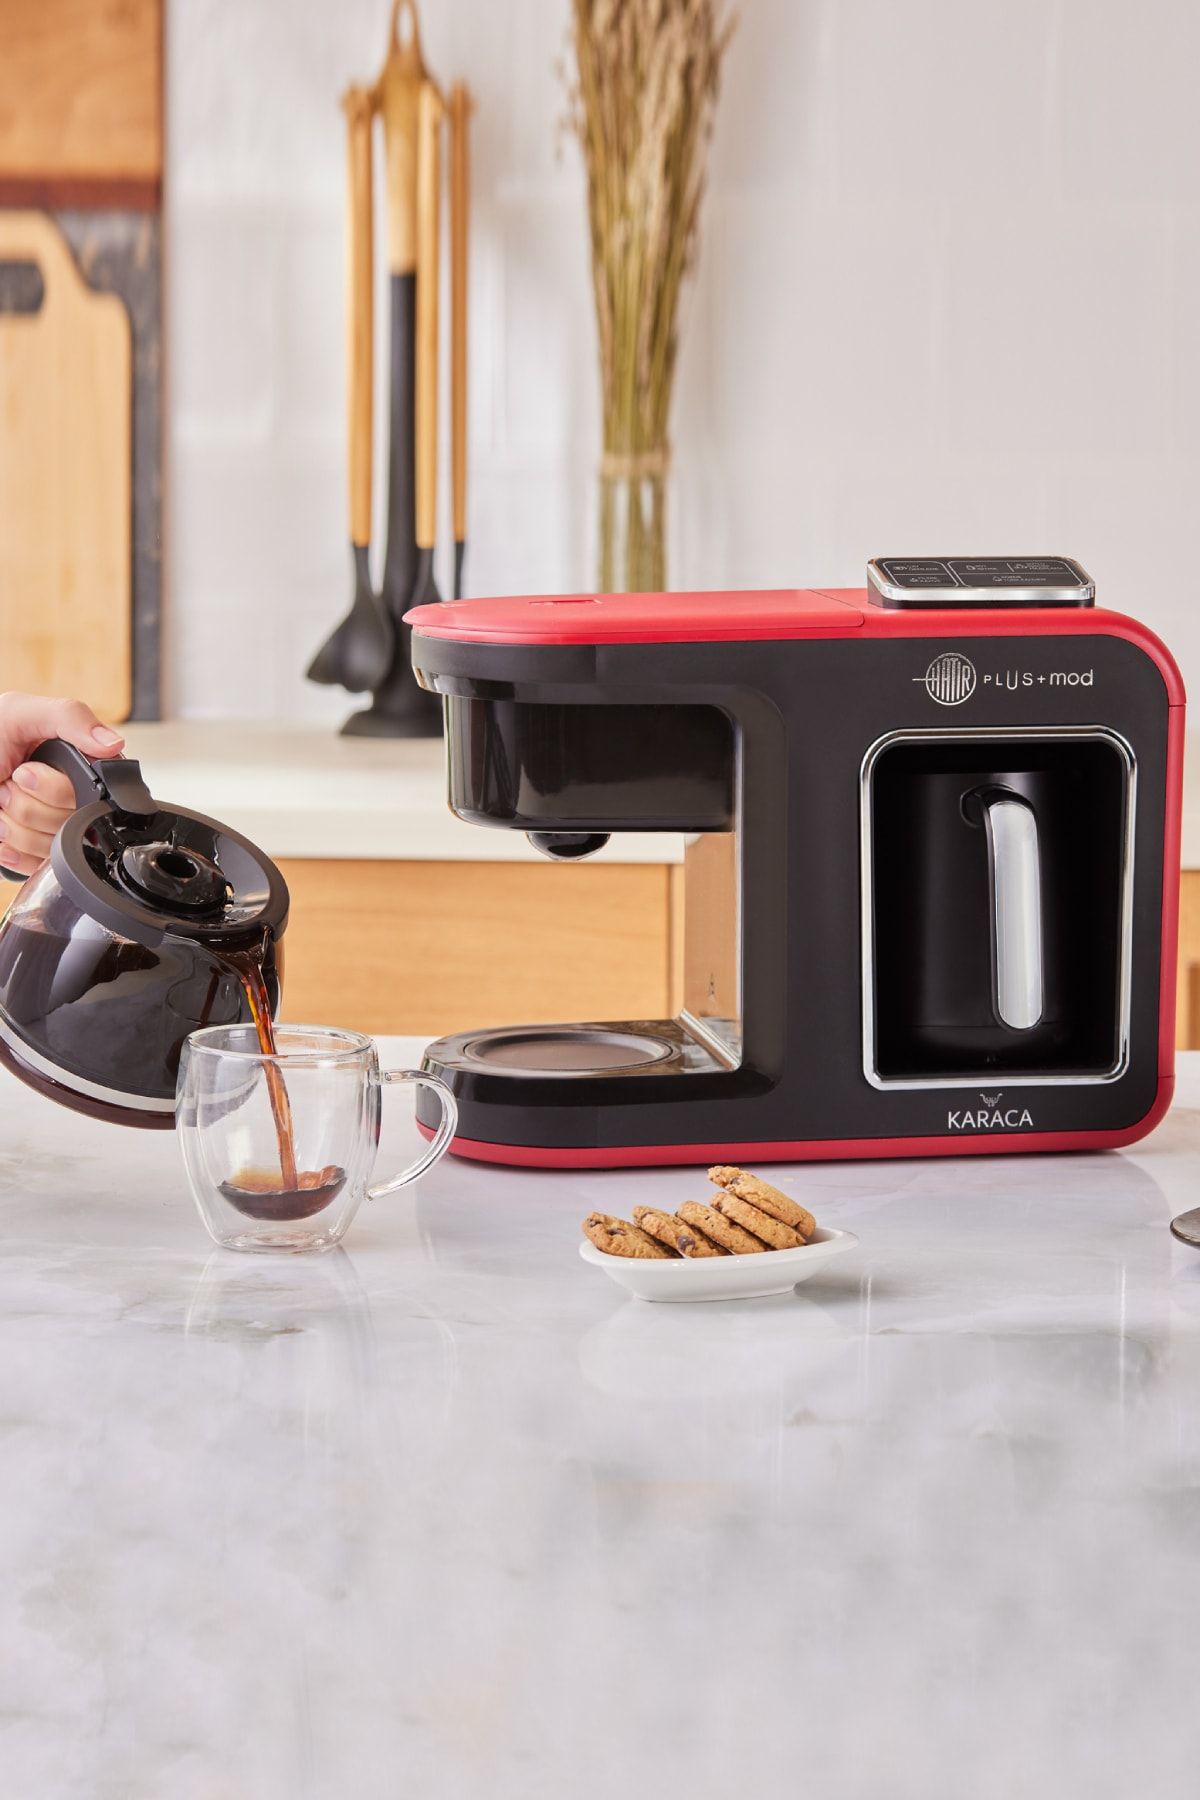 Karaca Hatır Plus Mod 5 In 1 Konuşan Kahve Ve Çay Makinesi Kırmızı